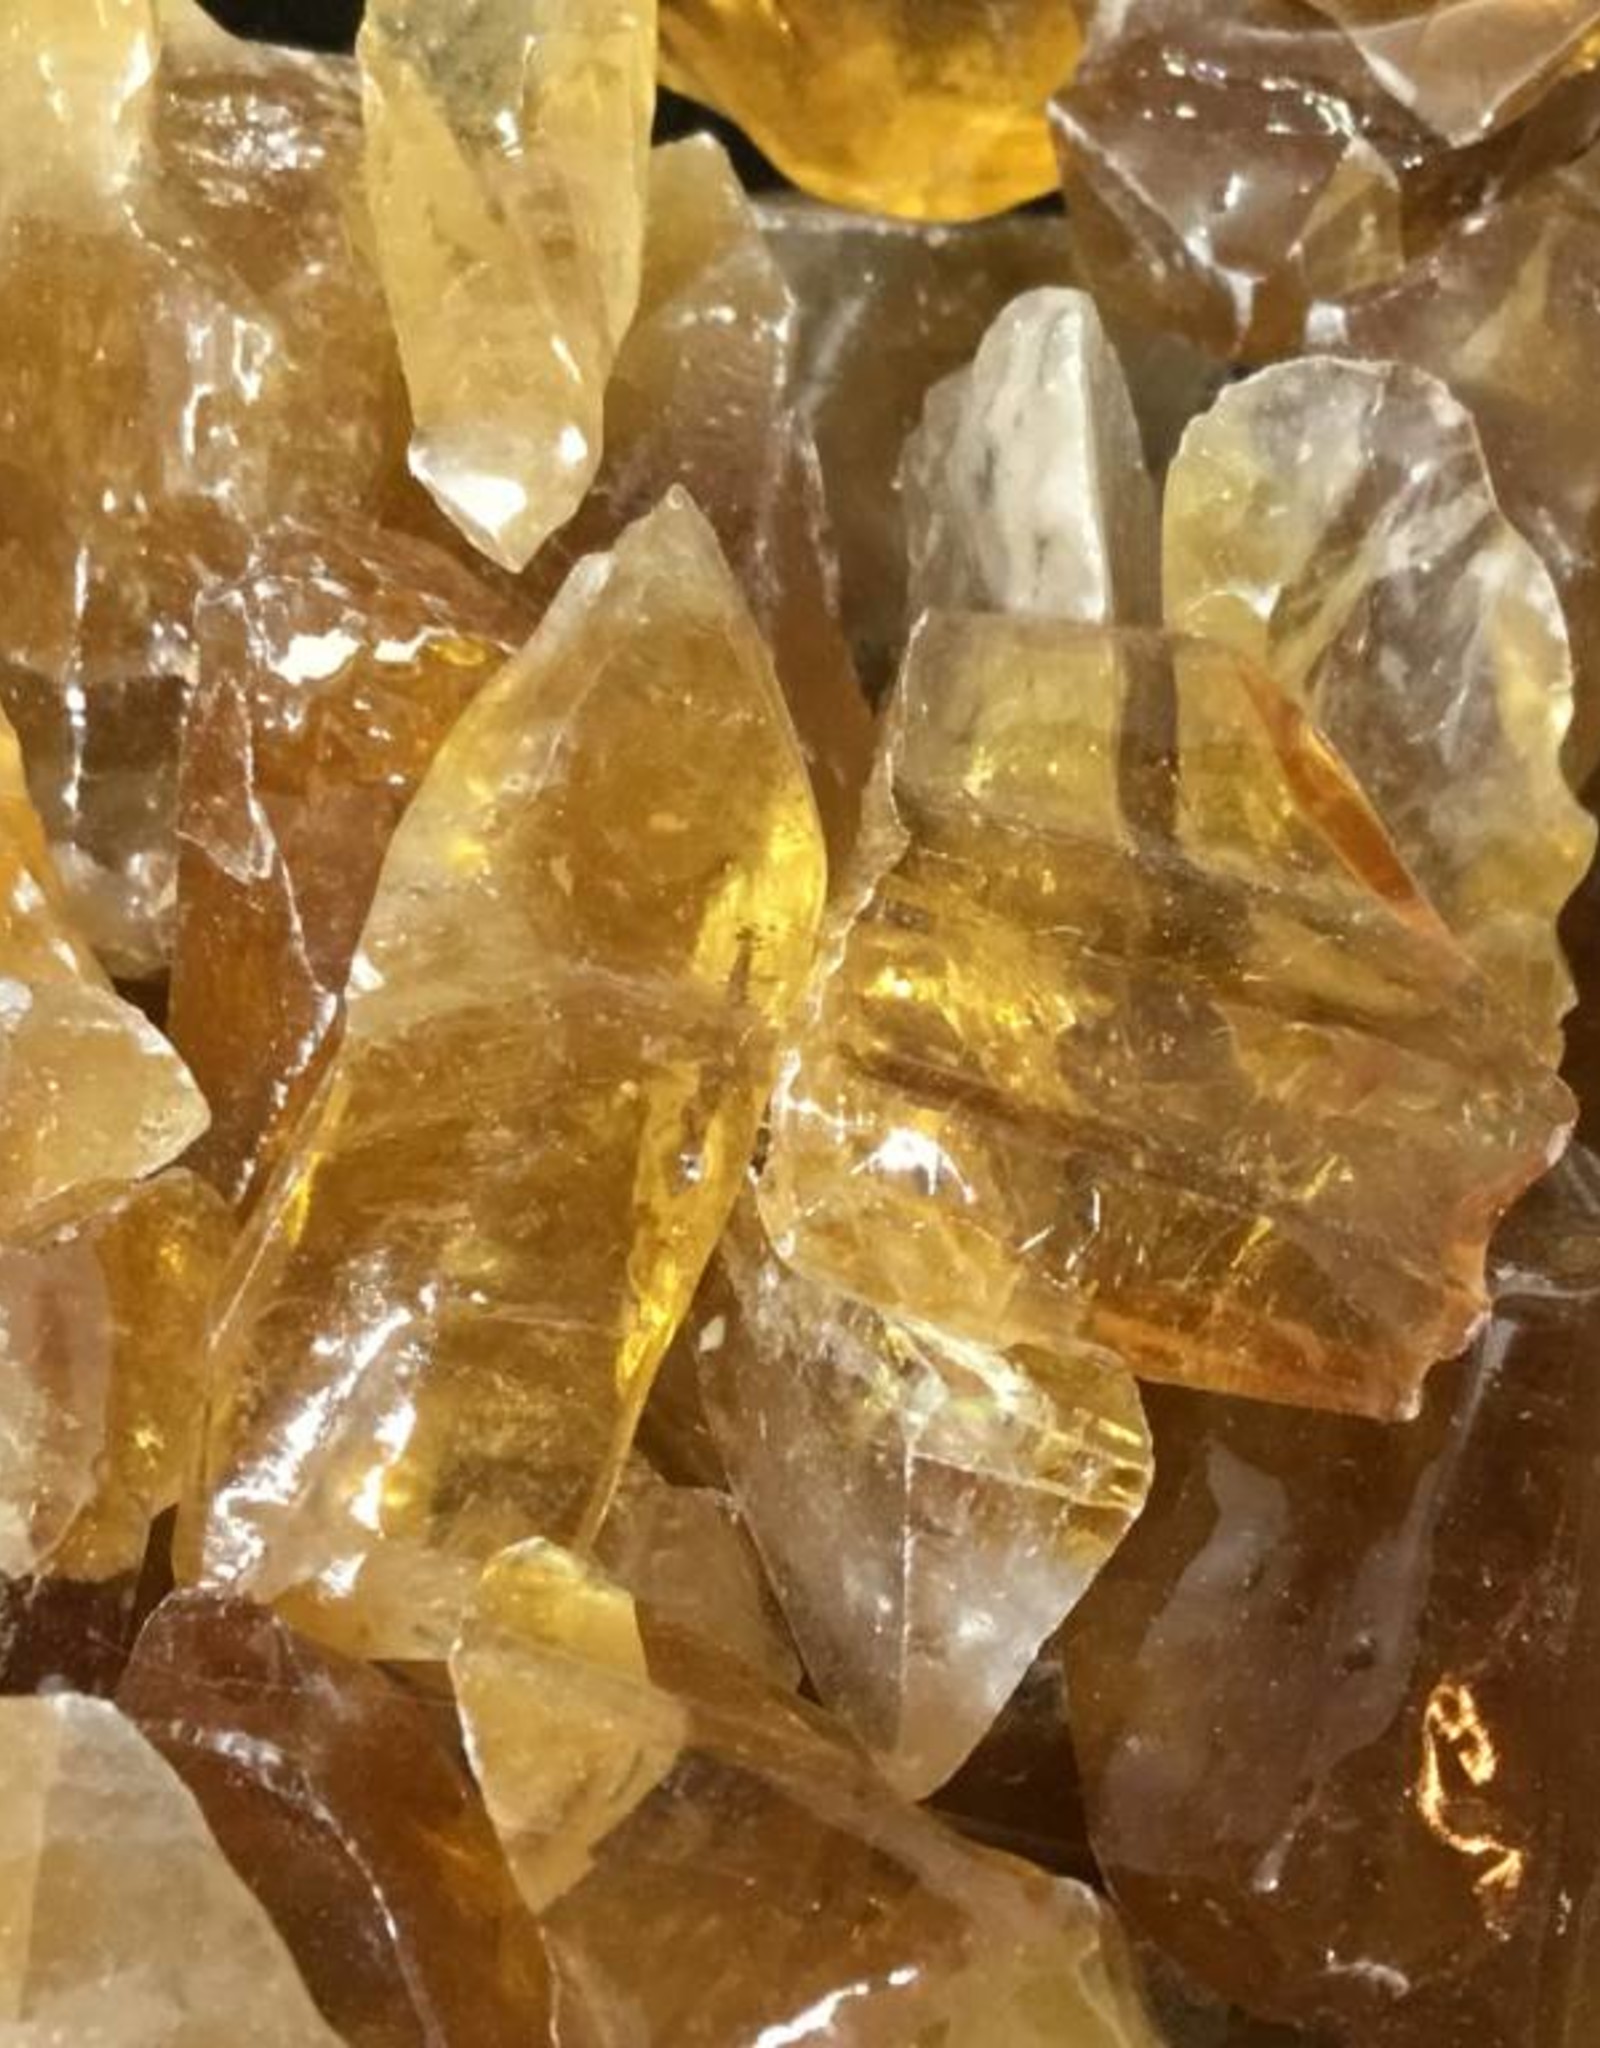 Honey Calcite Raw chunks